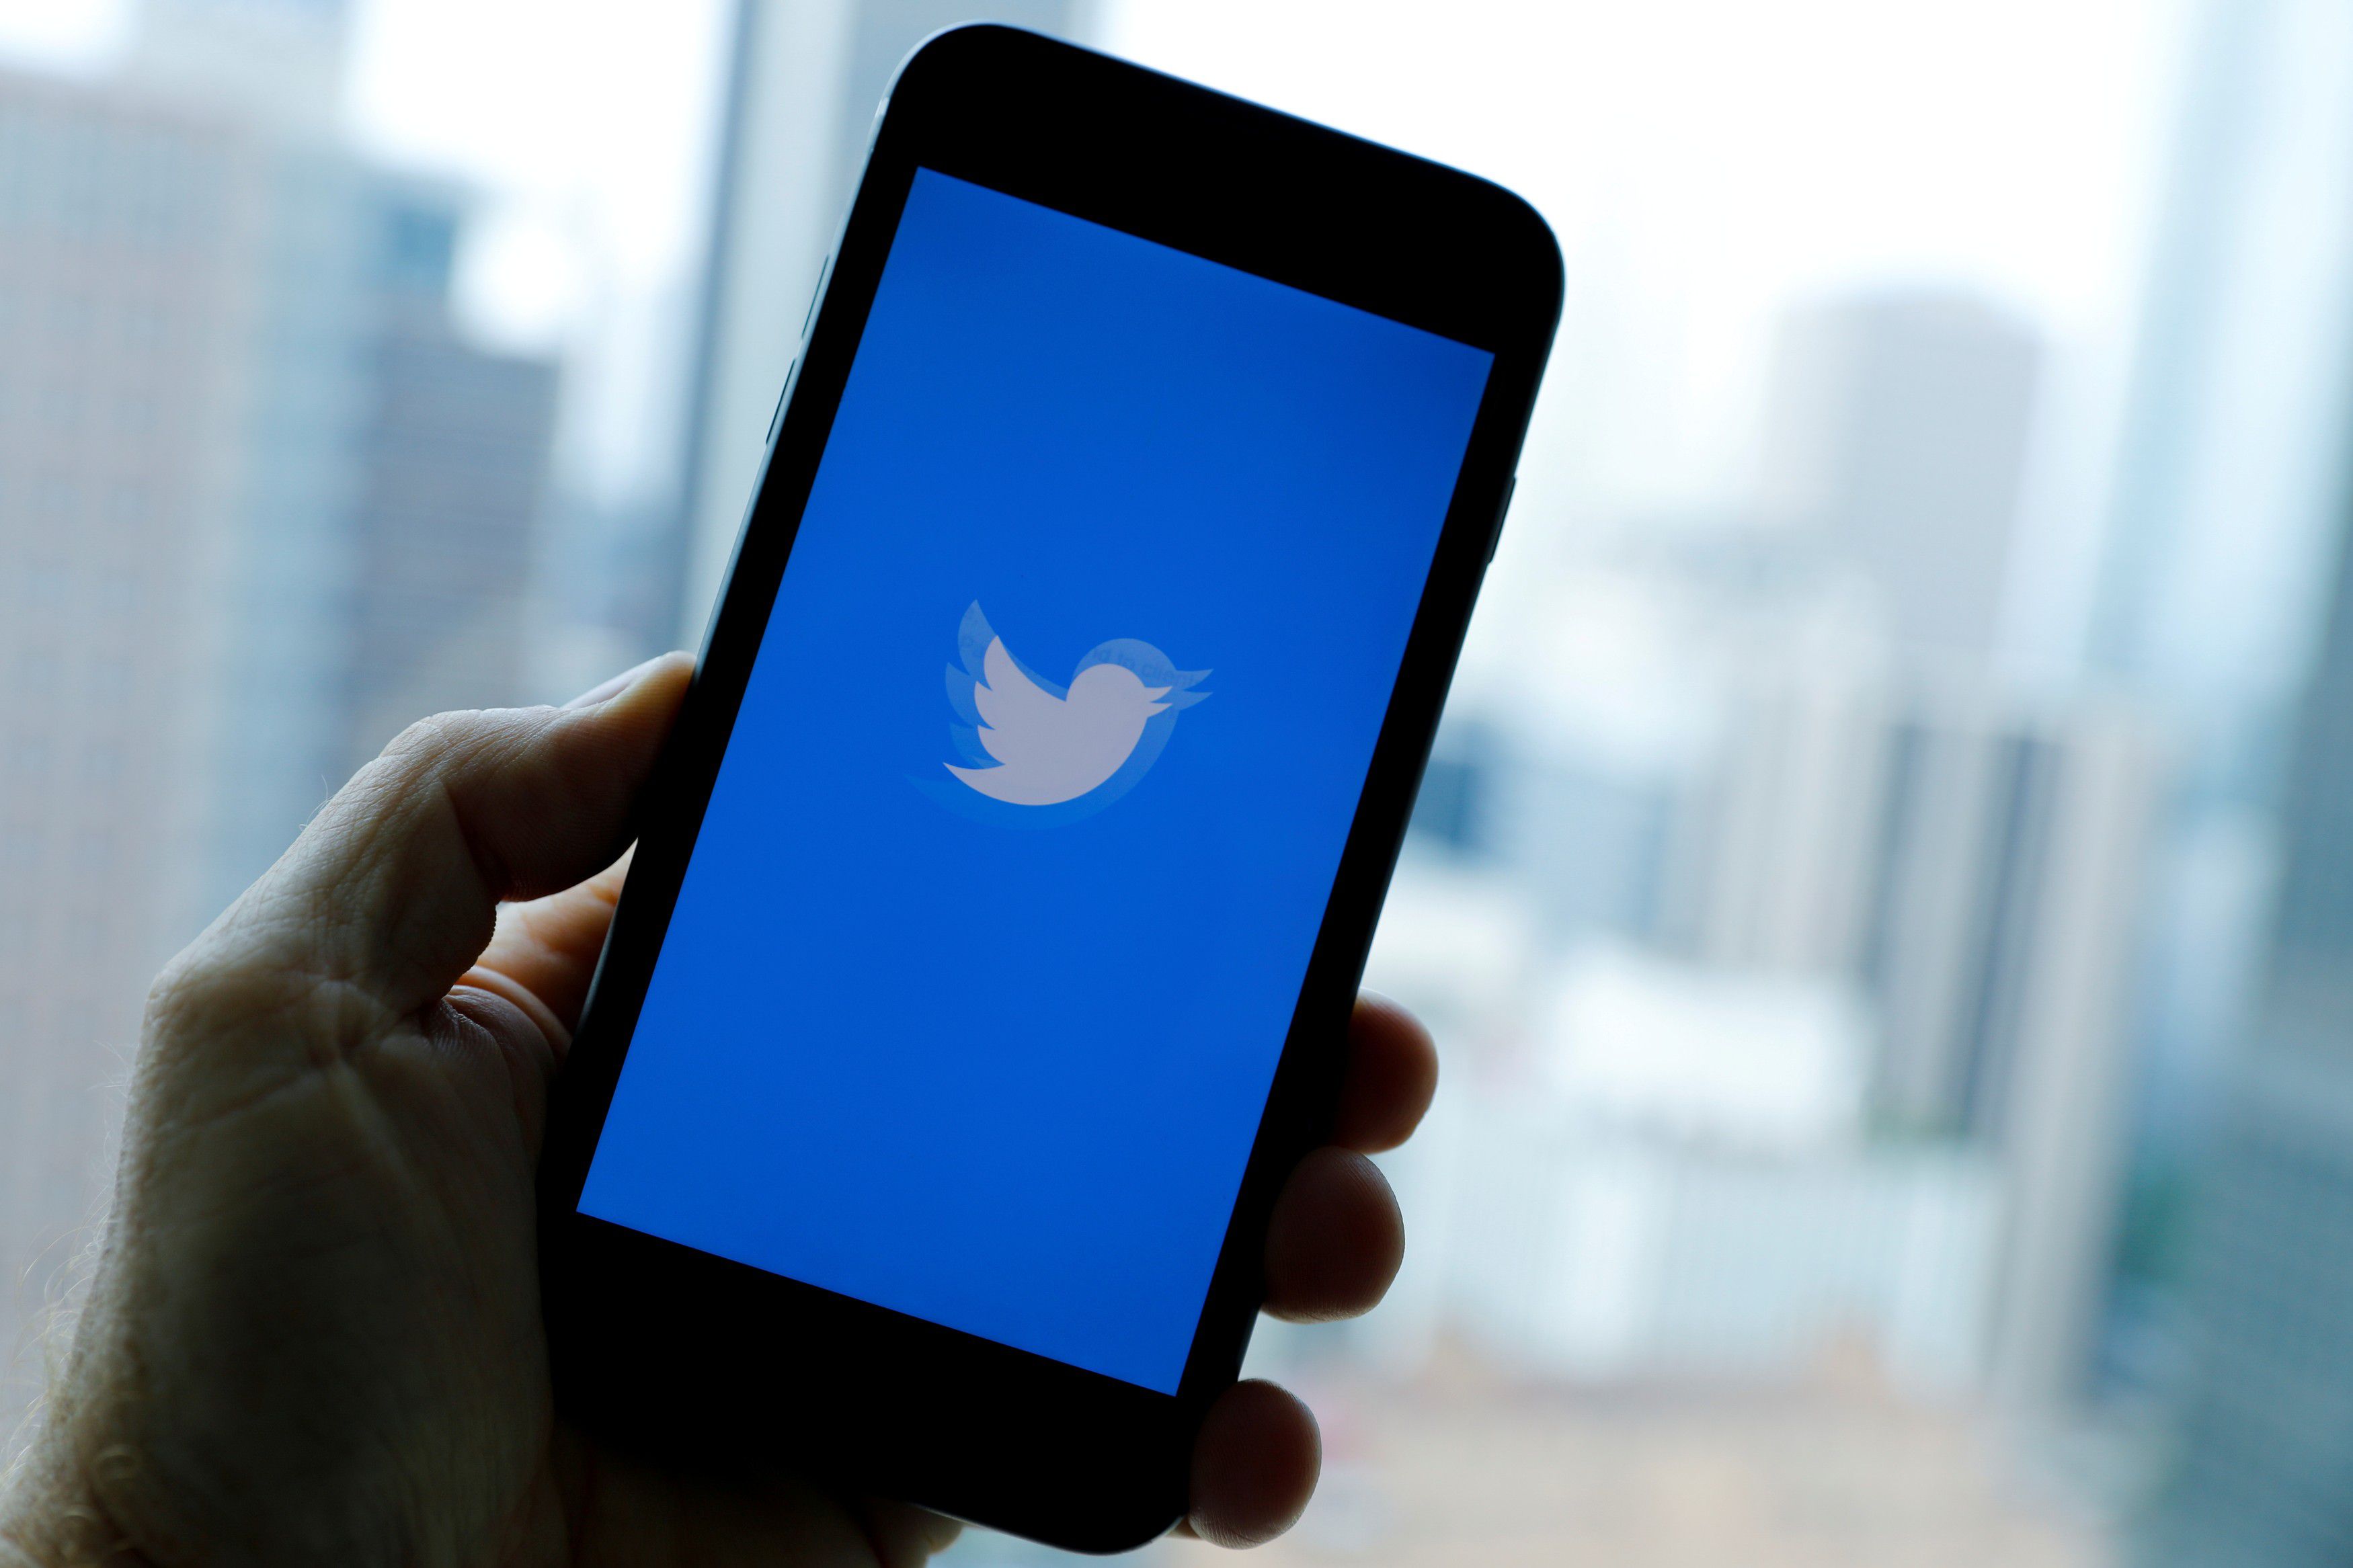 ट्विटर ने नीति में बदलाव किया, सहमति के बिना निजी सामग्री पोस्ट करने पर लगाई रोक